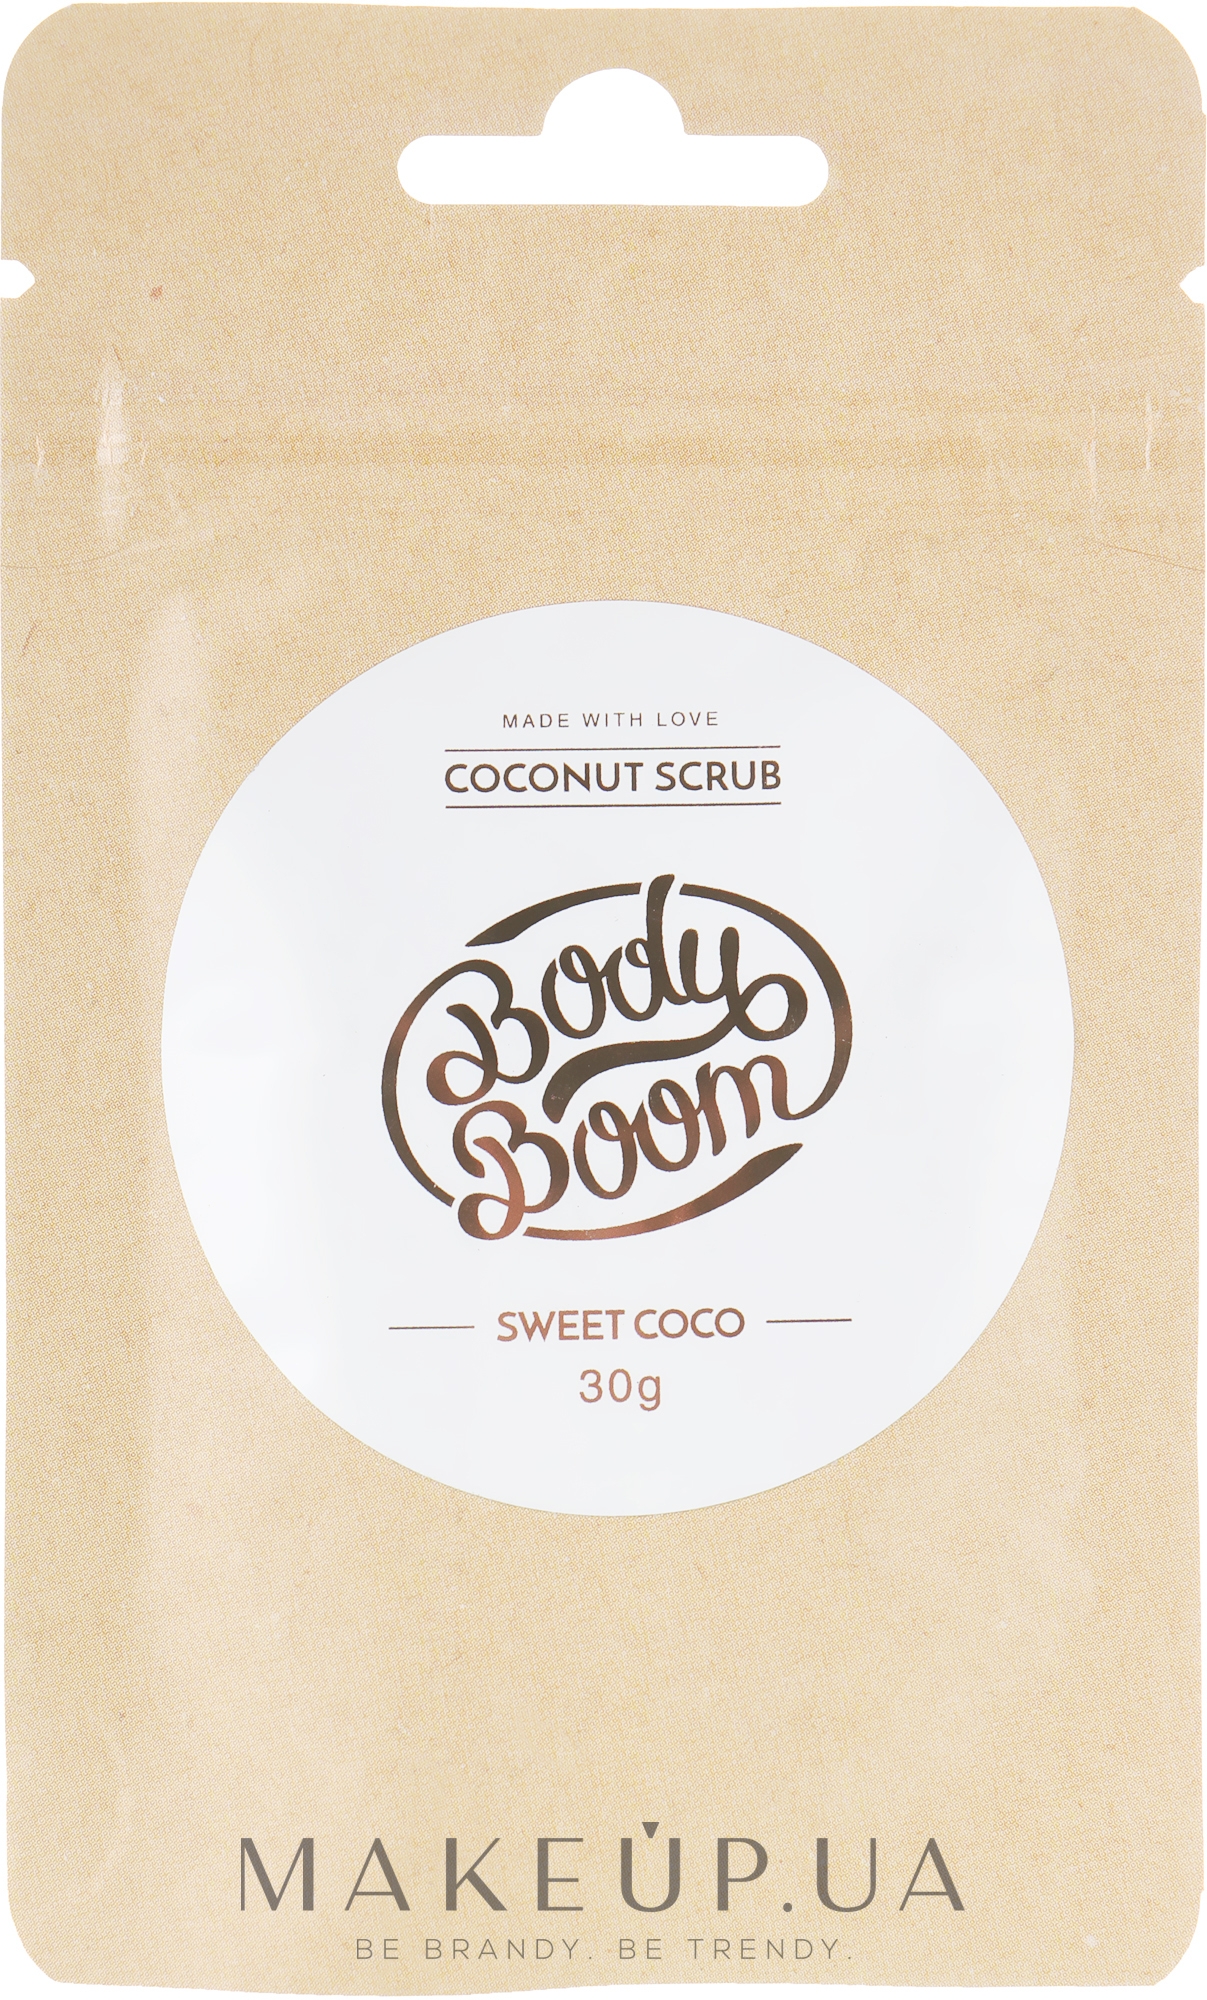 Кокосовий скраб для тіла - Body Boom Coconut Scrub Sweet Coco — фото 30g